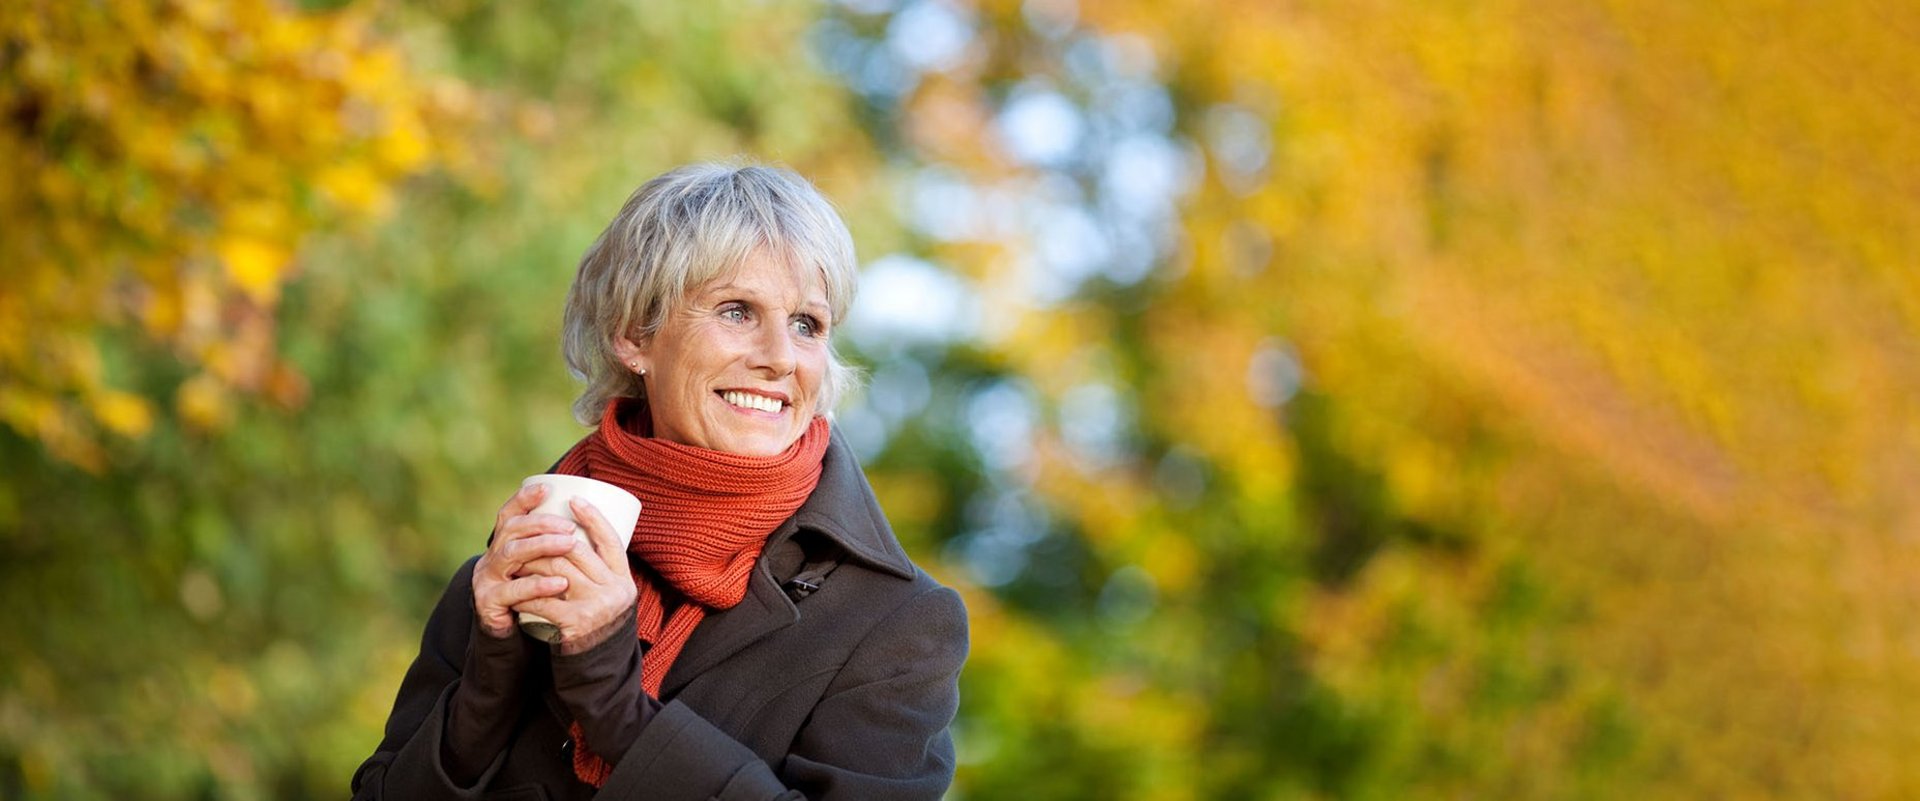 Eine Frau hält eine Tasse in der Hand und genießt draussen den Herbst